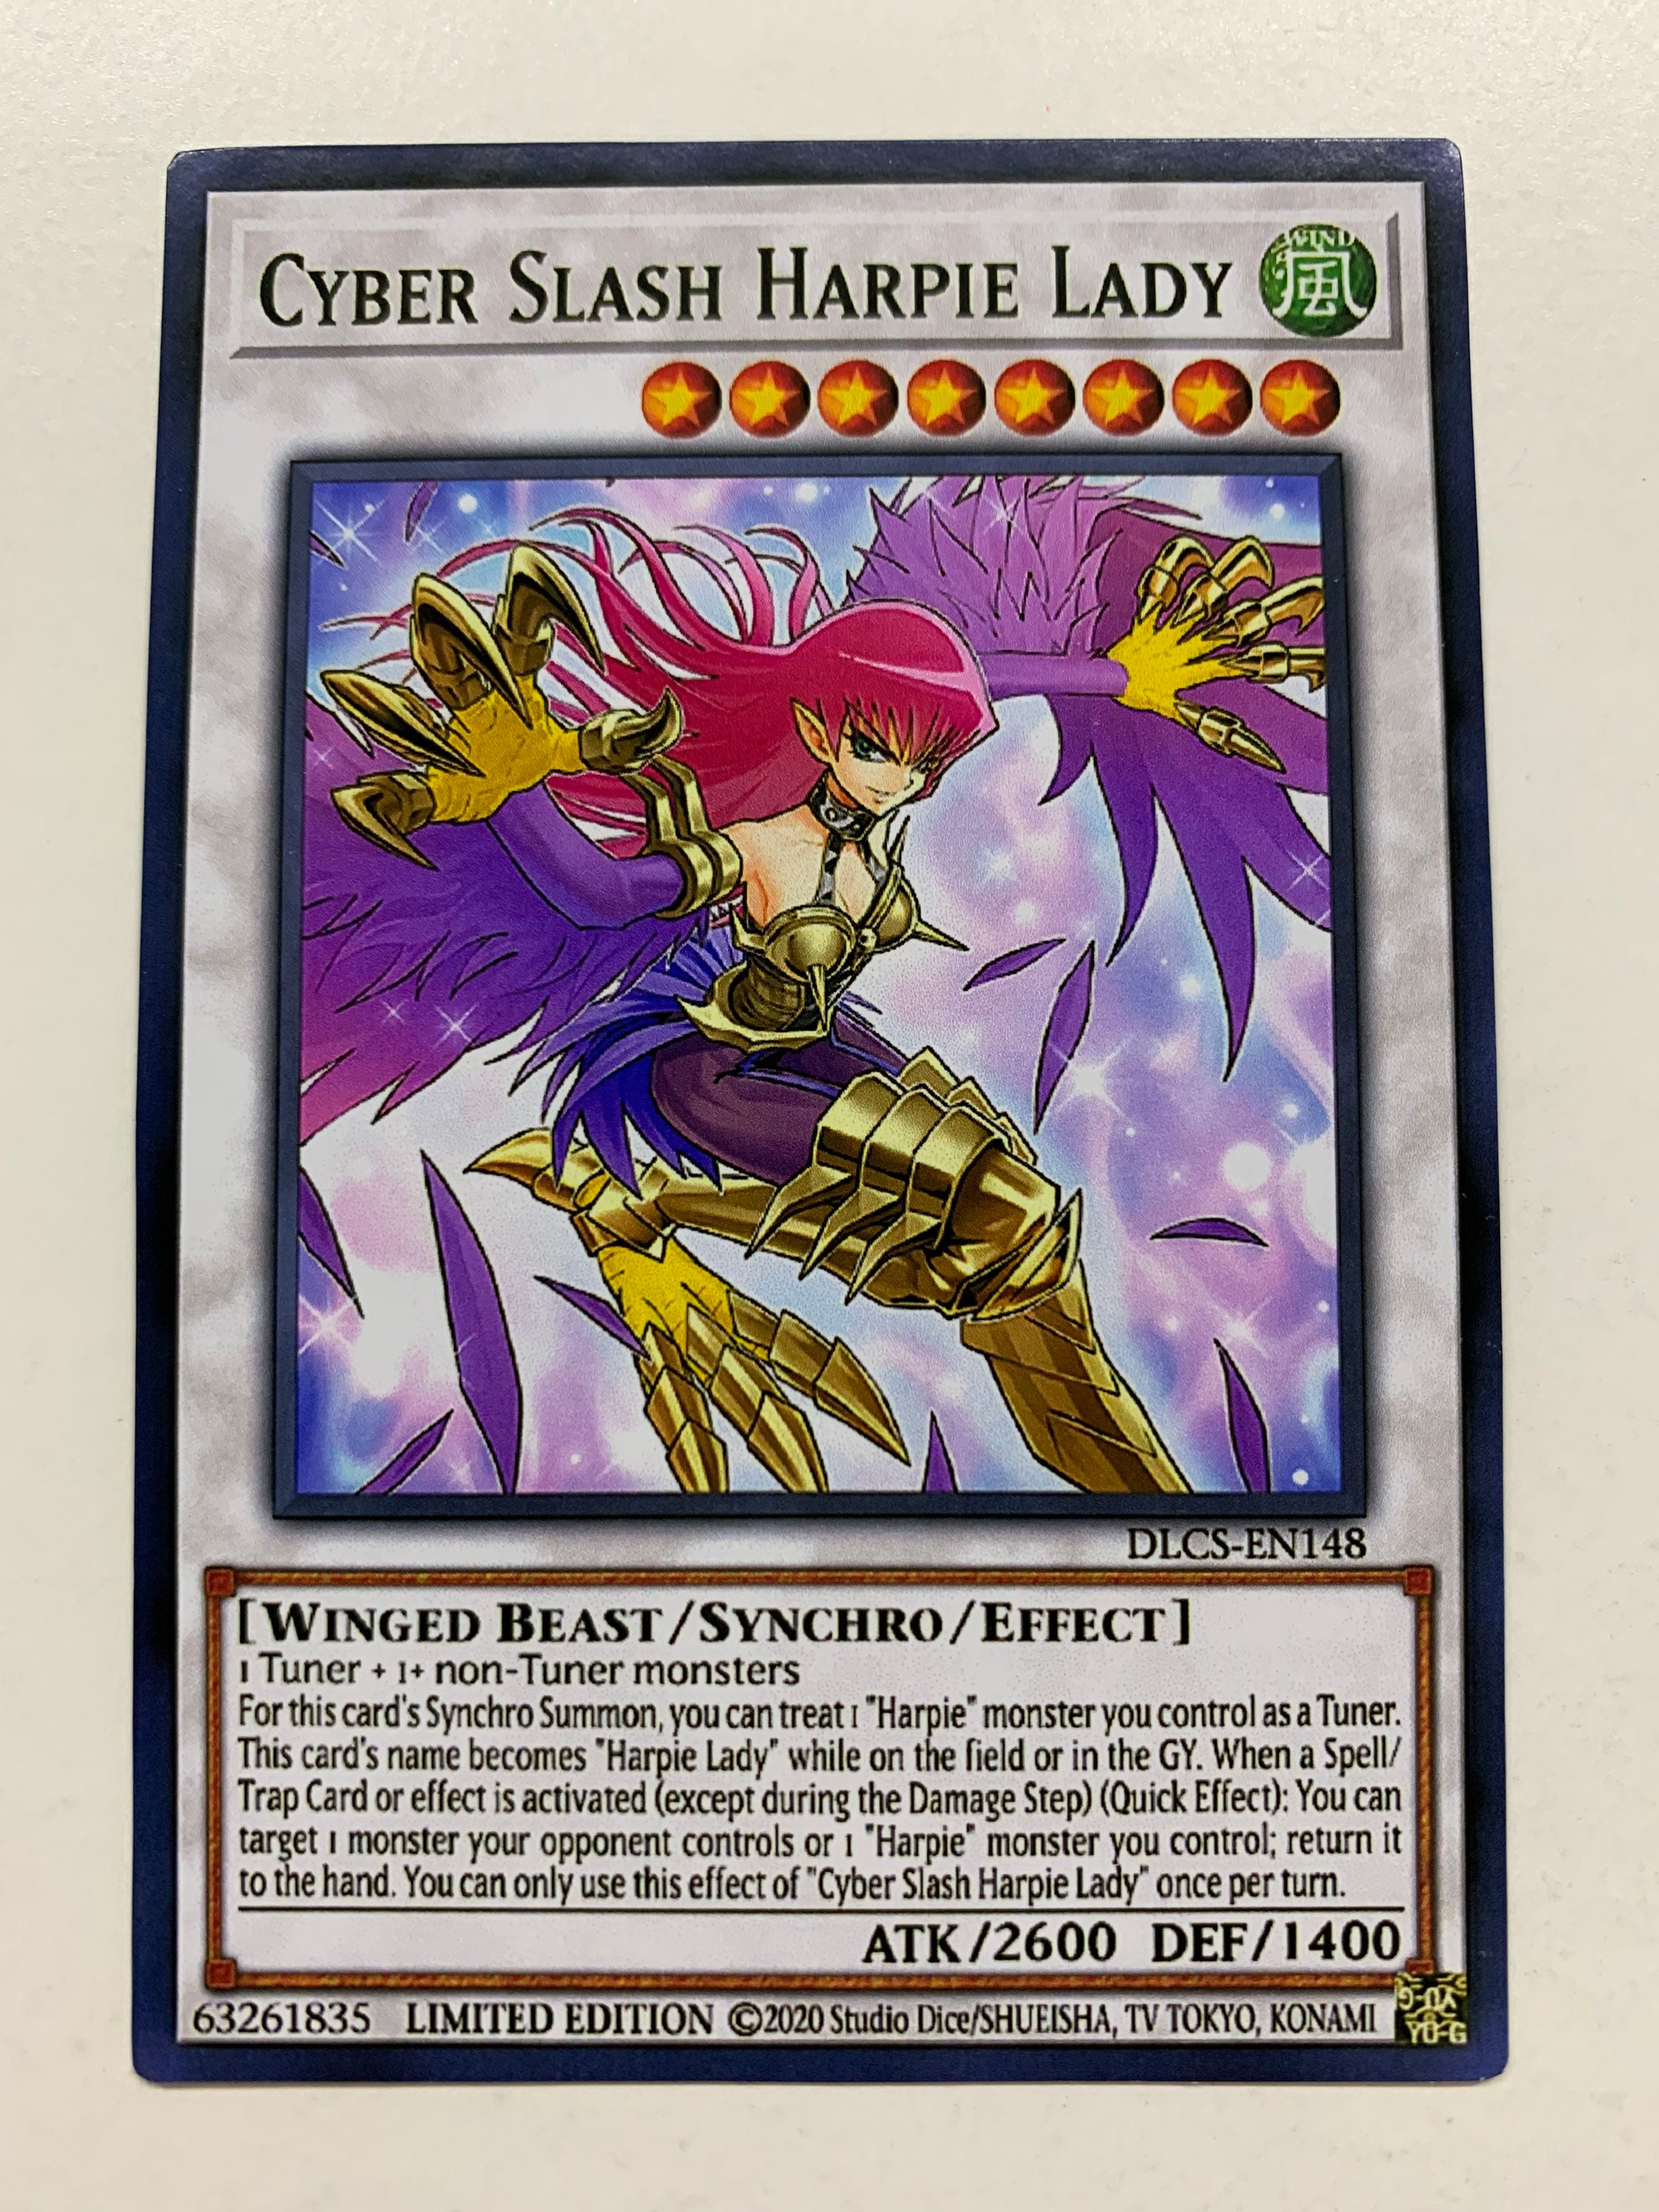 Cyber slash harpie lady